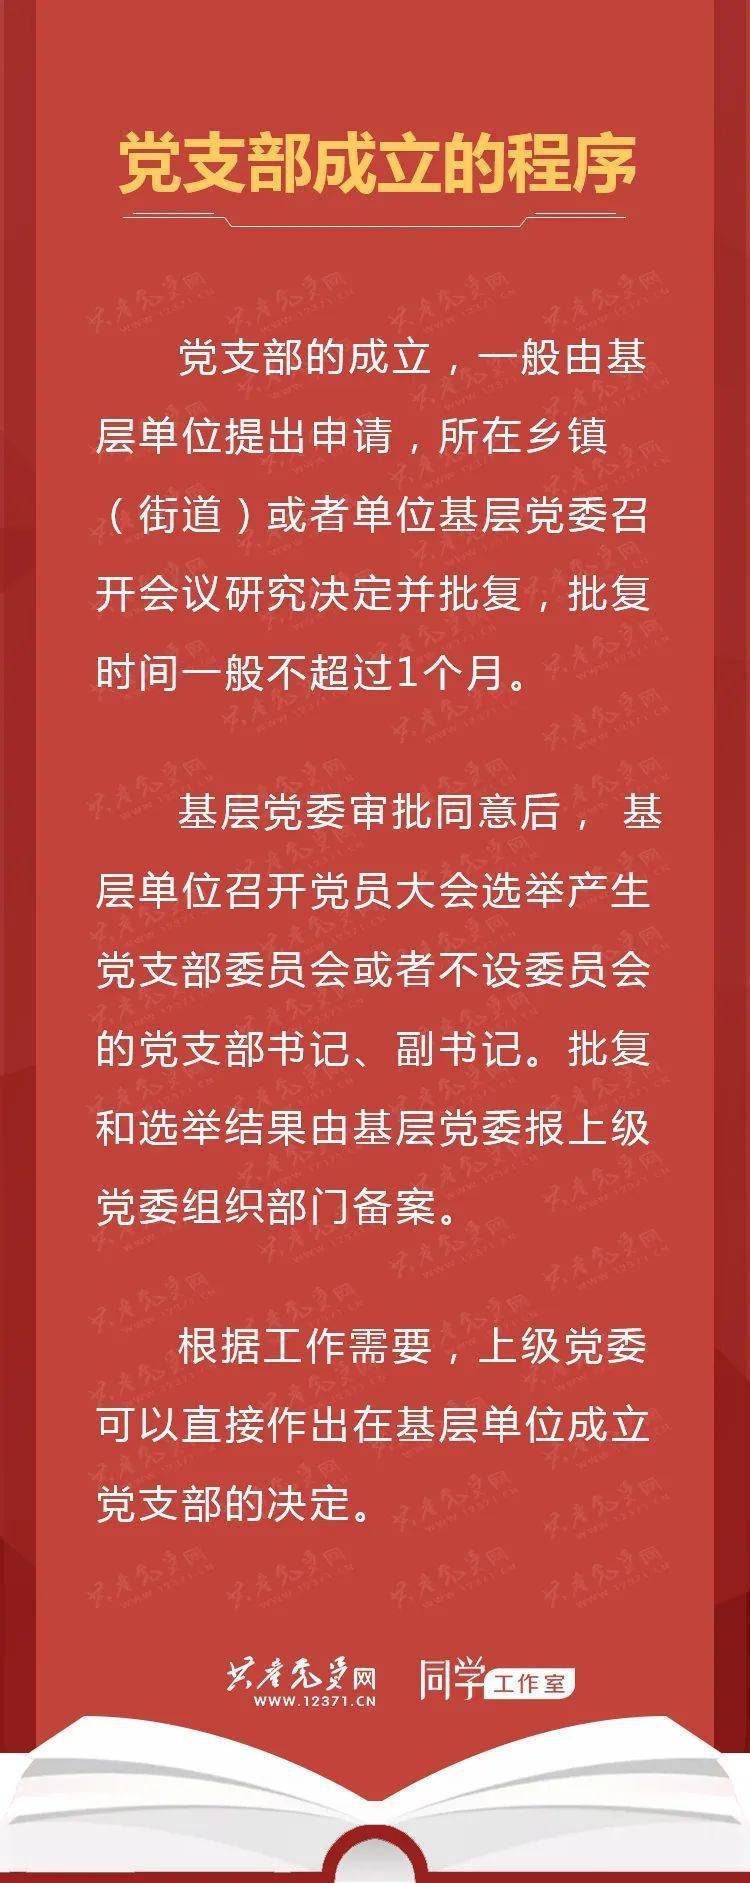 【学习园地】《中国共产党支部工作条例(